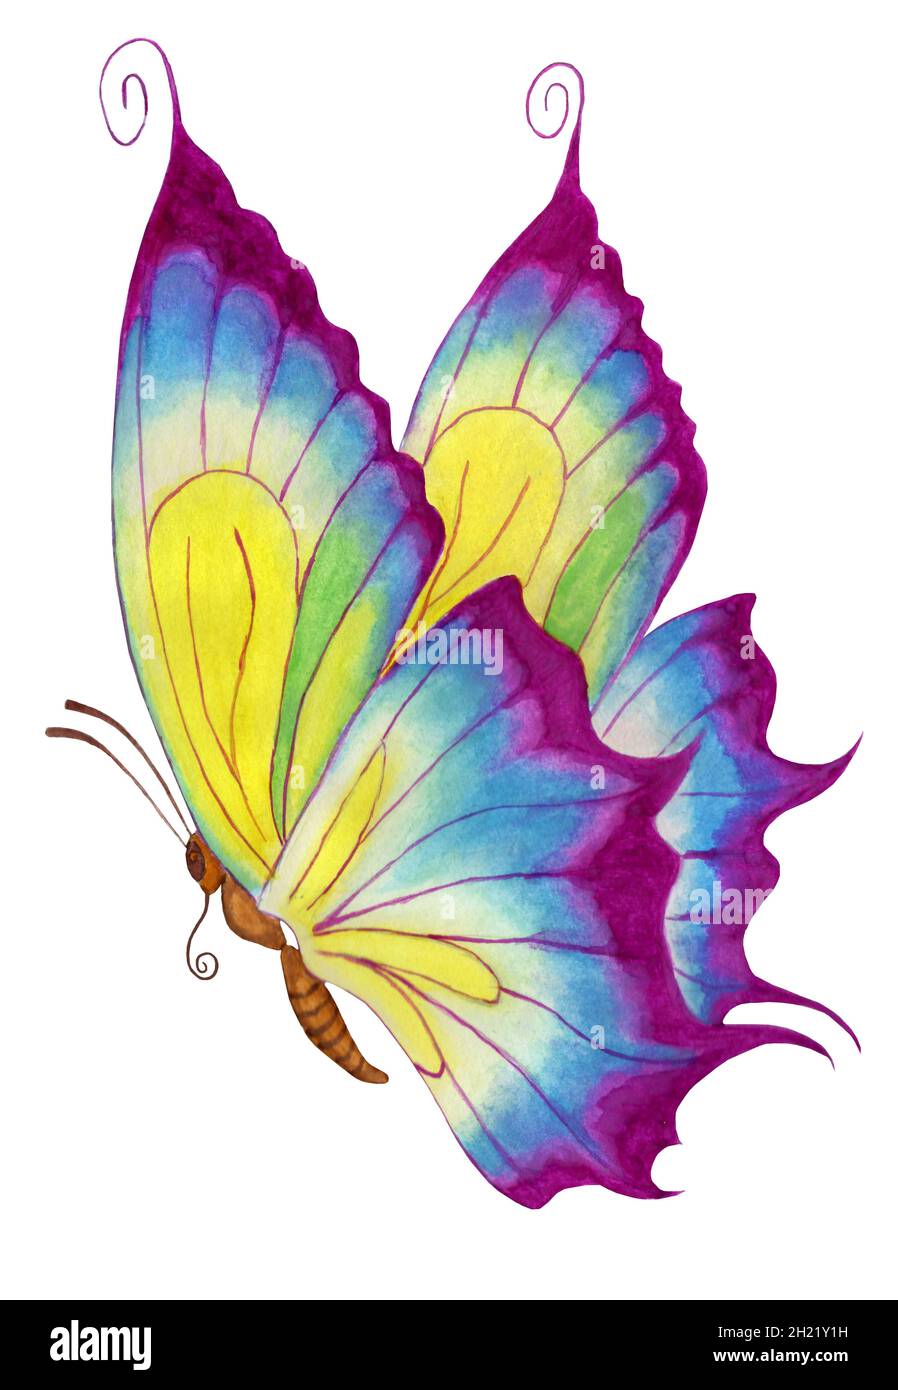 Illustrazione dell'acquerello della farfalla viola. Isolato su sfondo bianco. Farfalla per bambini con ali colorate. Disegnata a mano su carta. Foto Stock